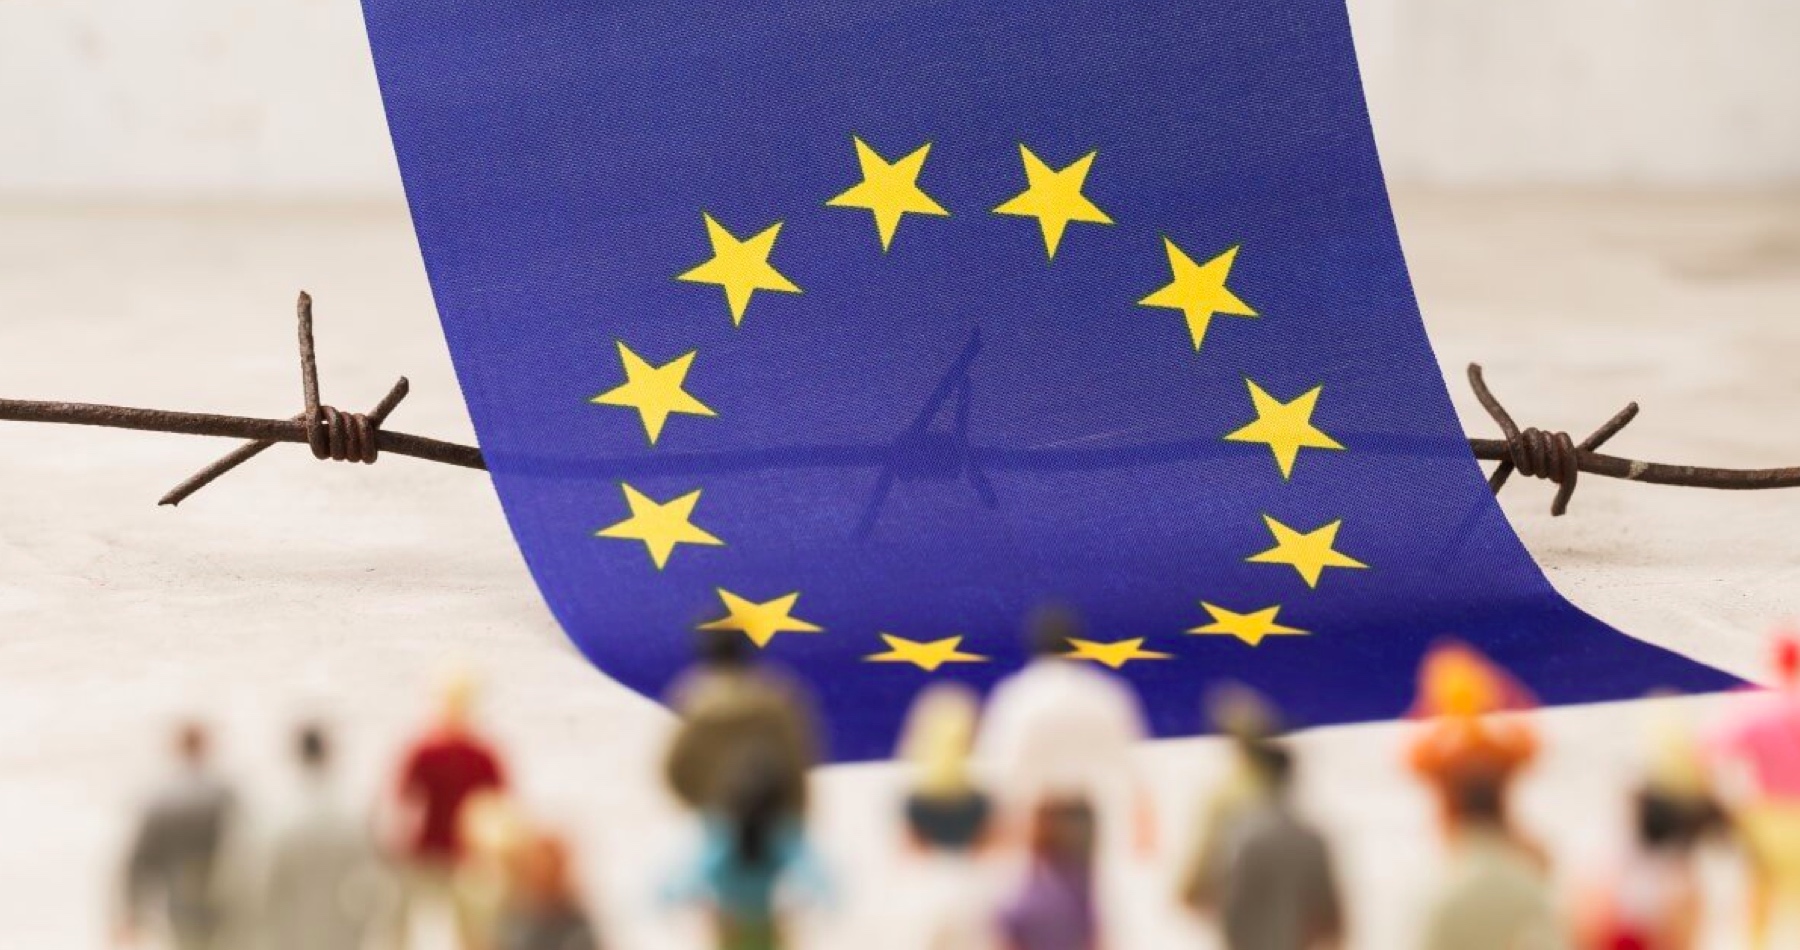 Členské štáty EÚ definitívne schválili nový pakt o migrácii a azyle. Slovensko pri dvoch predpisoch hlasovalo proti a pri ôsmich sa zdržalo hlasovania